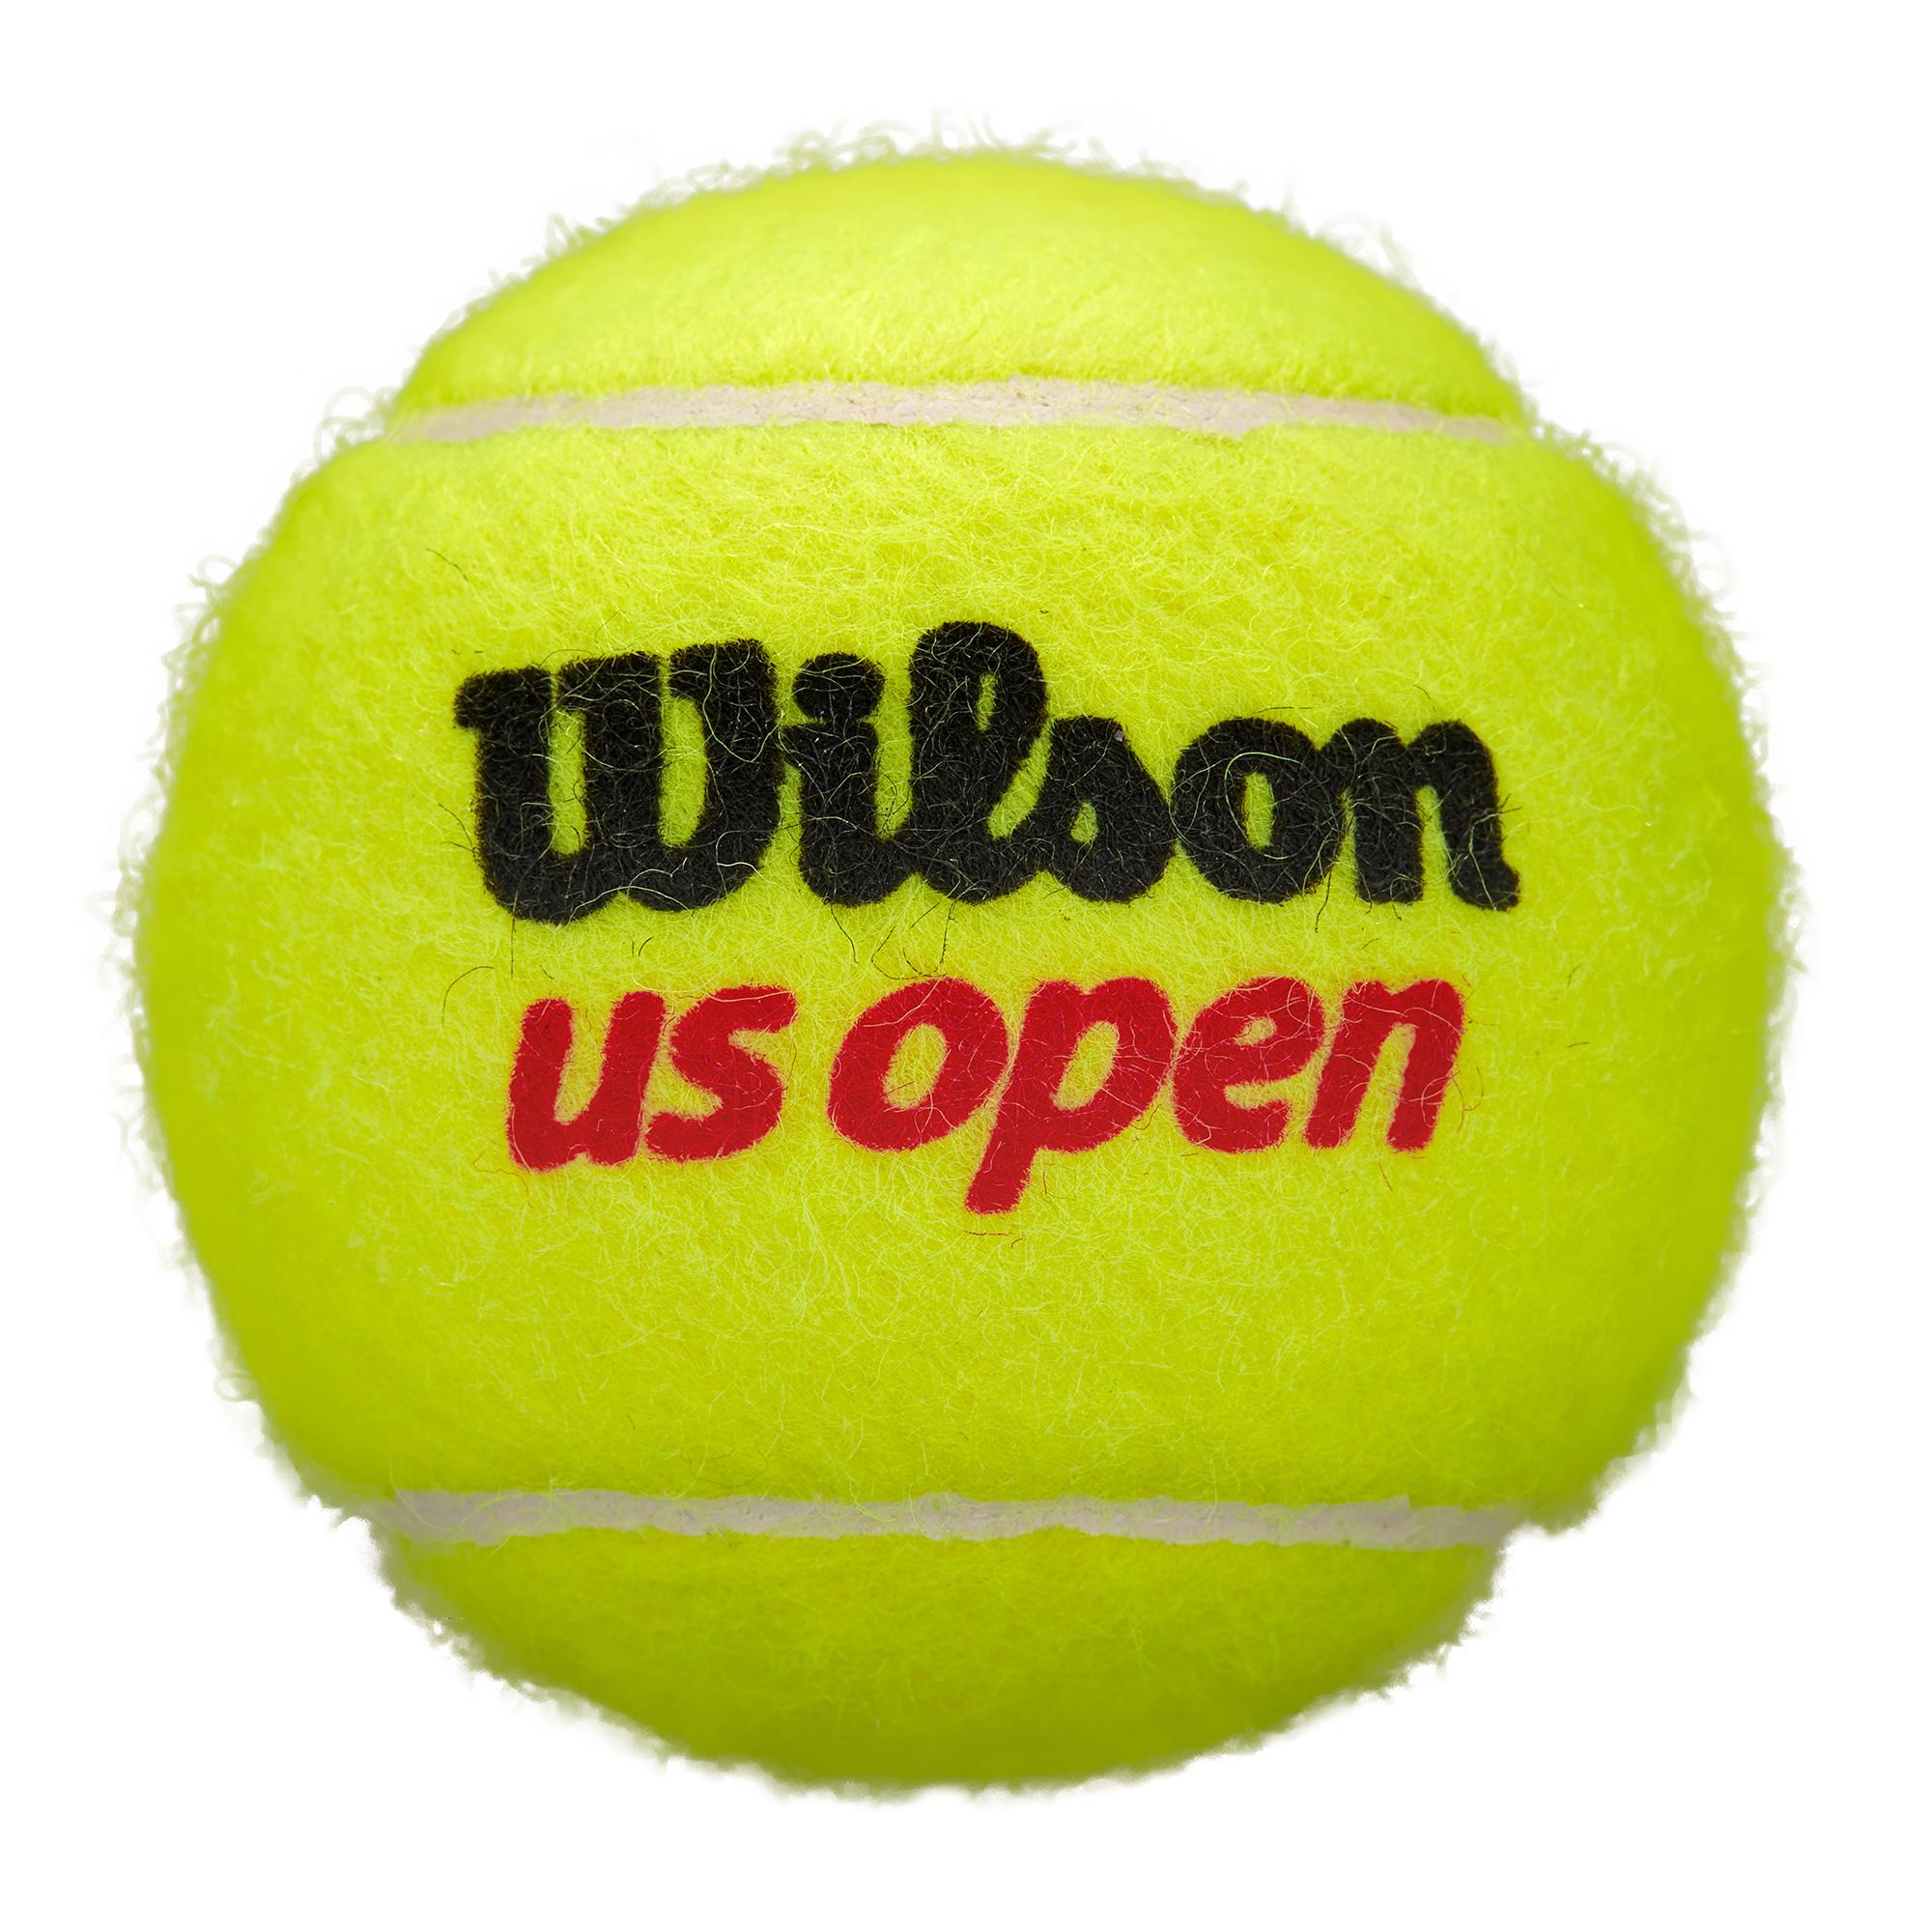 US Open Tennis Balls - 4 Ball Can